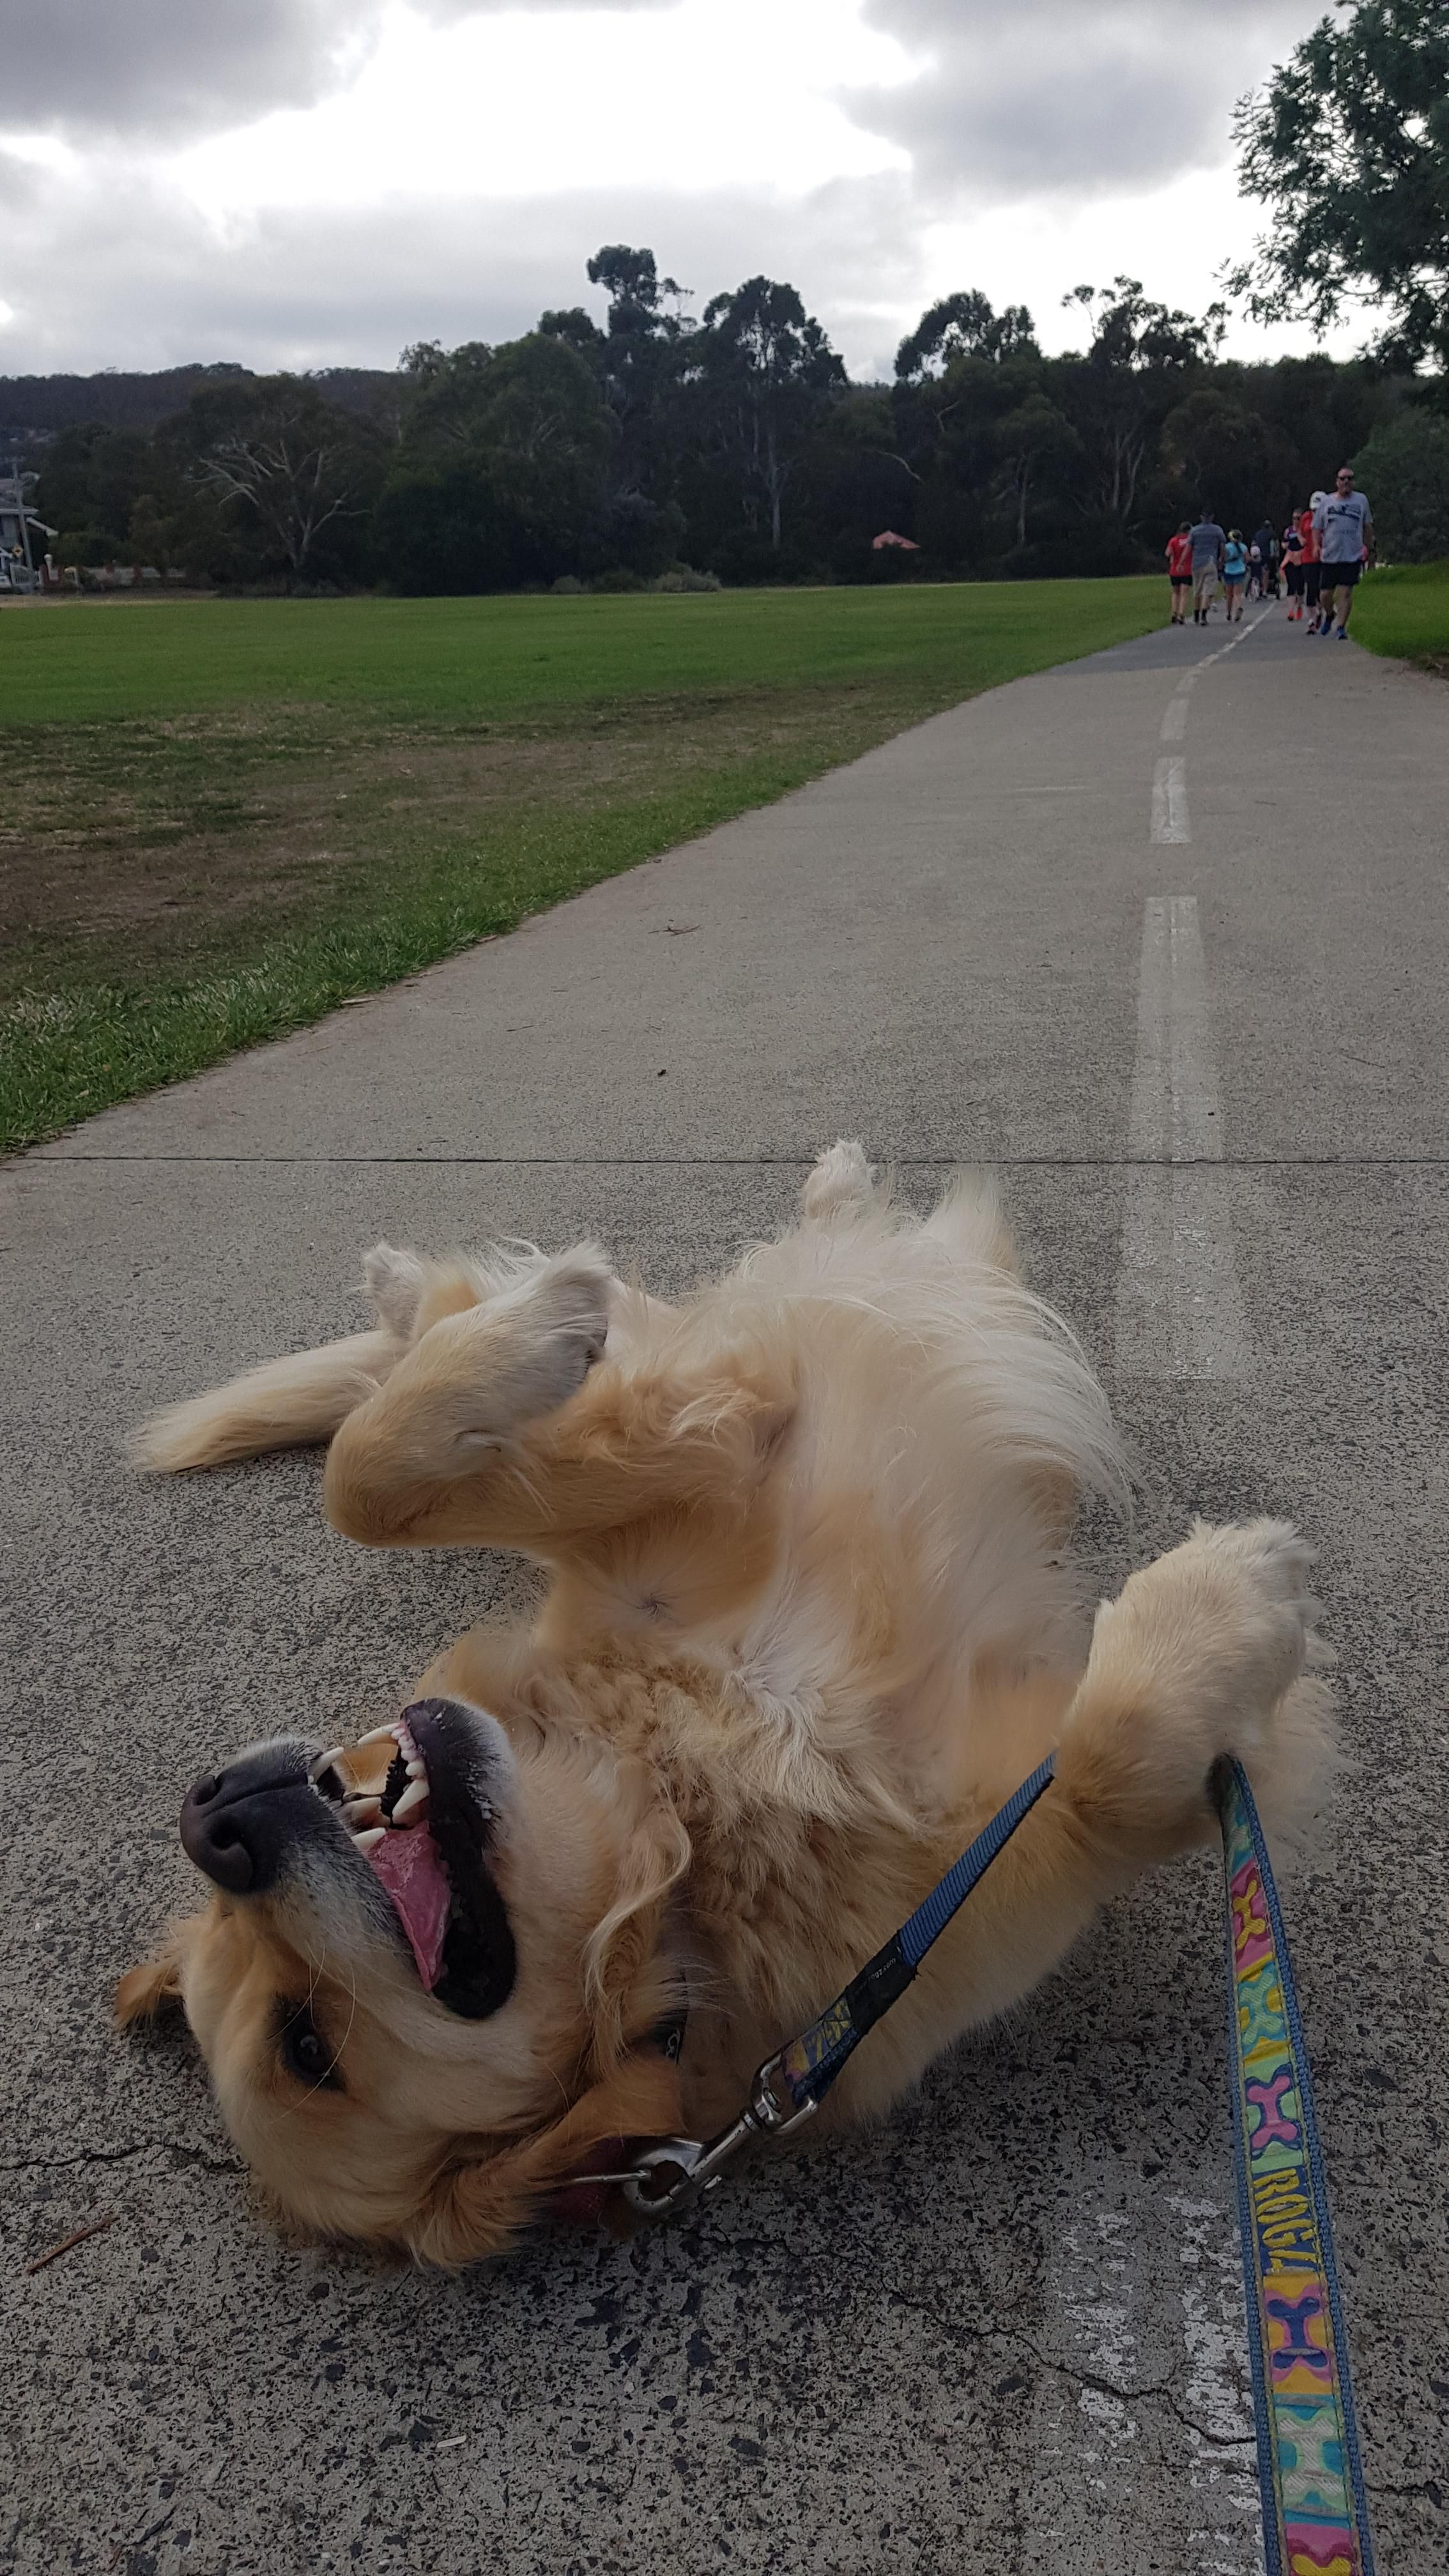 Her first fun run was not a success.